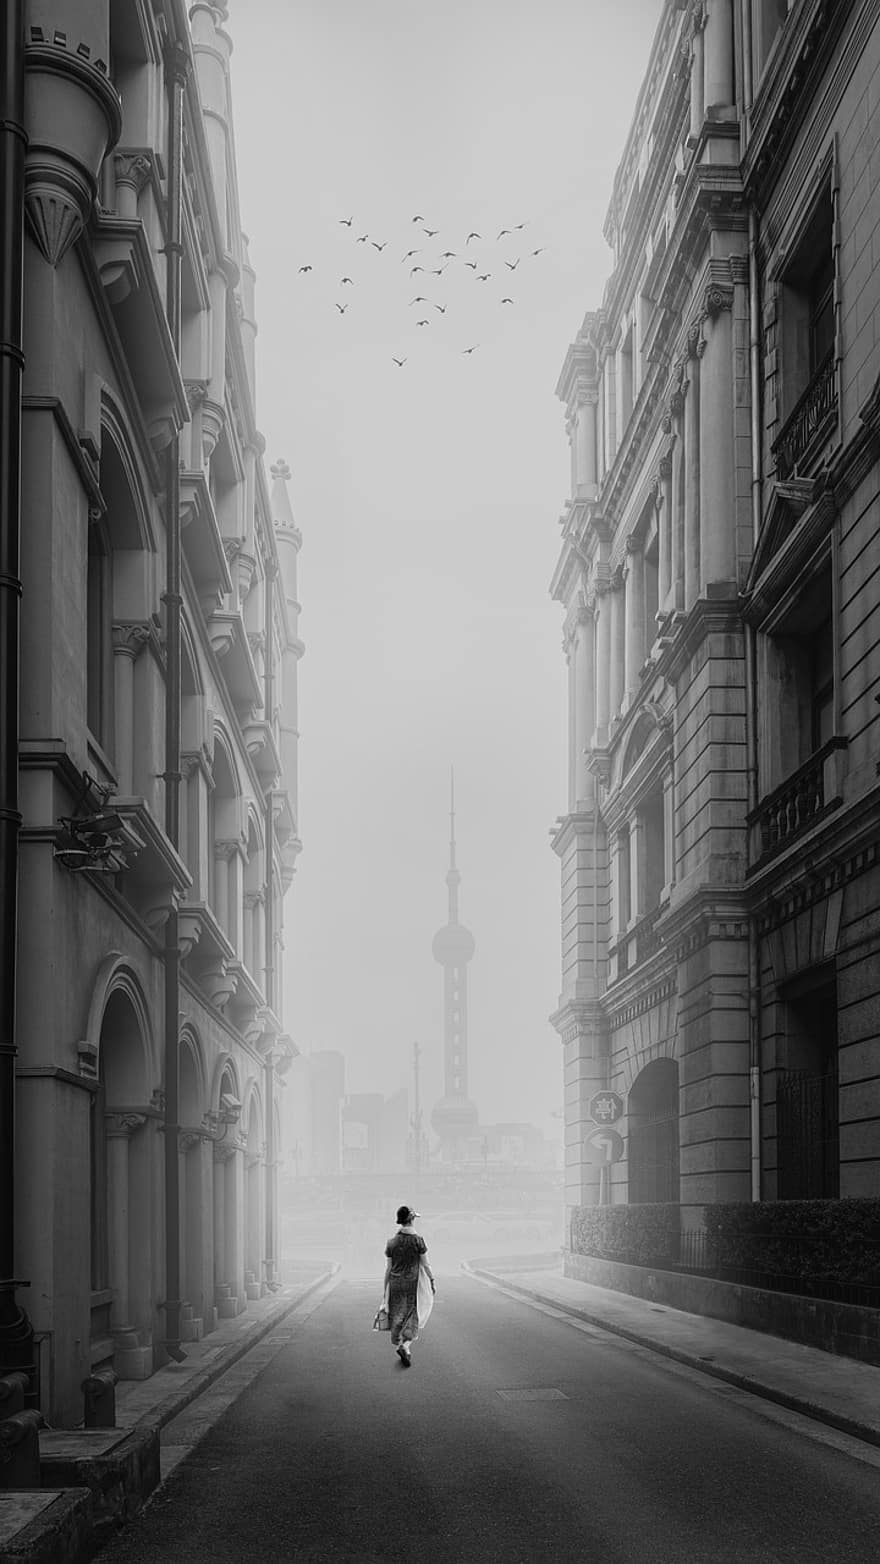 ομίχλη, πόλη, κτίρια, δρόμος, δρομάκι, αρχιτεκτονική, αστικό τοπίο, ζωή στην πόλη, διάσημο μέρος, μαύρο και άσπρο, εξωτερικό κτίριο